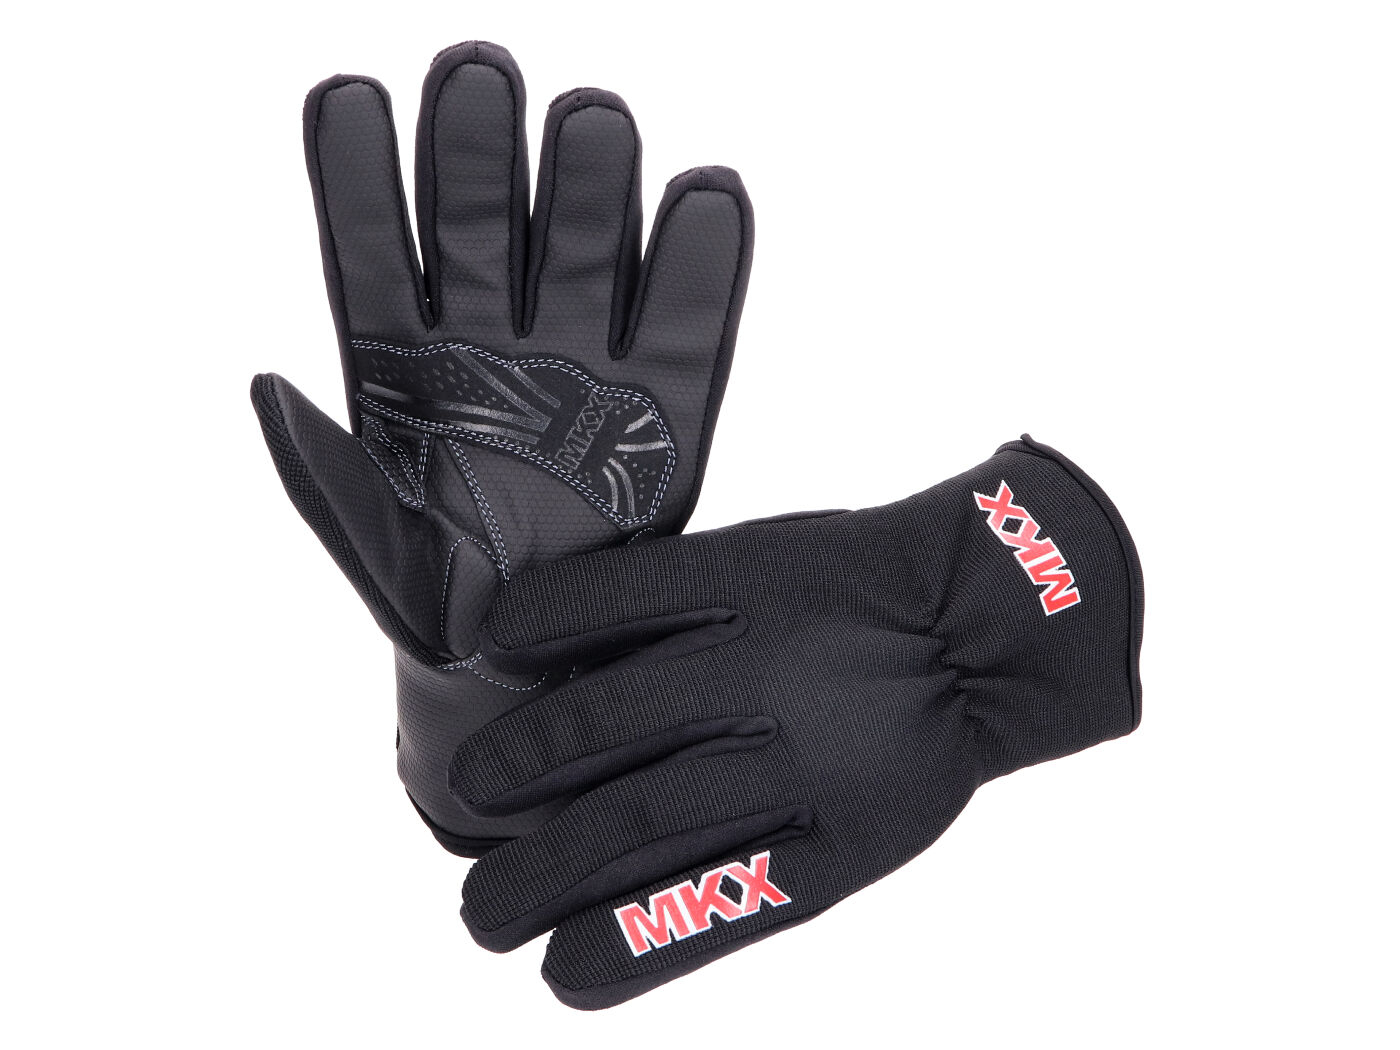 Gloves MKX Serino Winter - Size XL